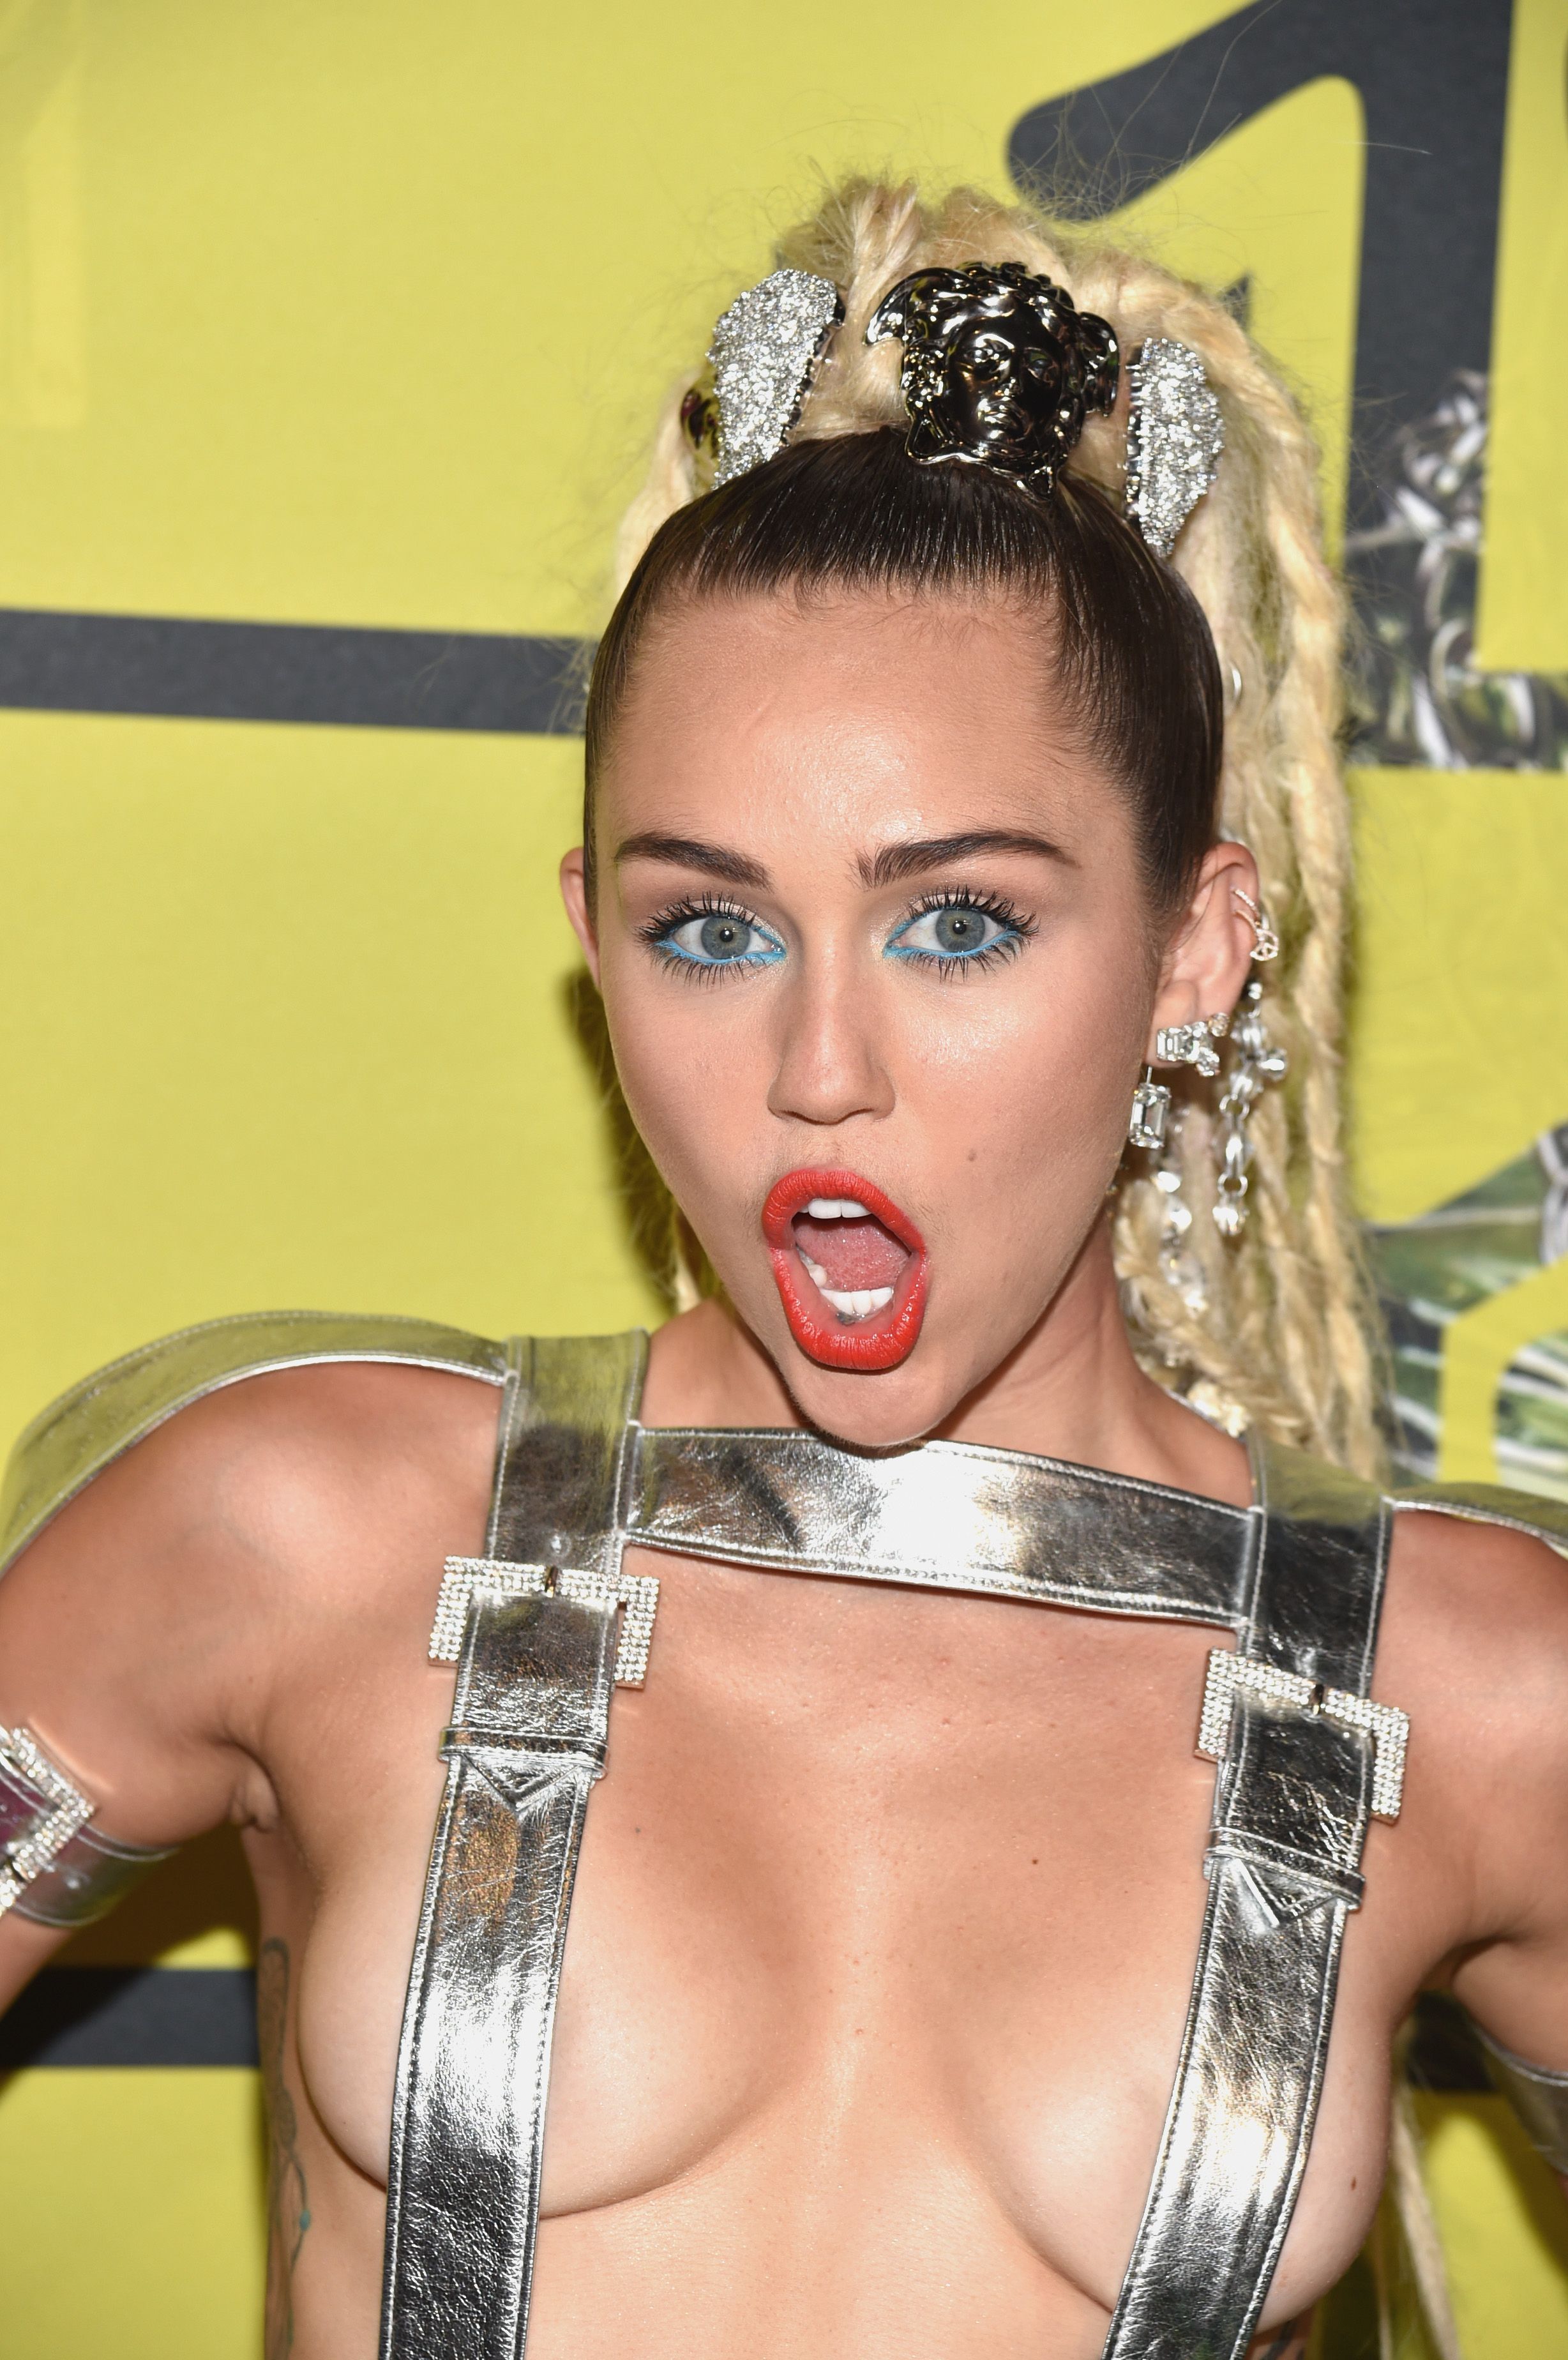 Miley Cyrus Fucked By Black - Miley Cyrus's VMAs dreadlocks cause controversy